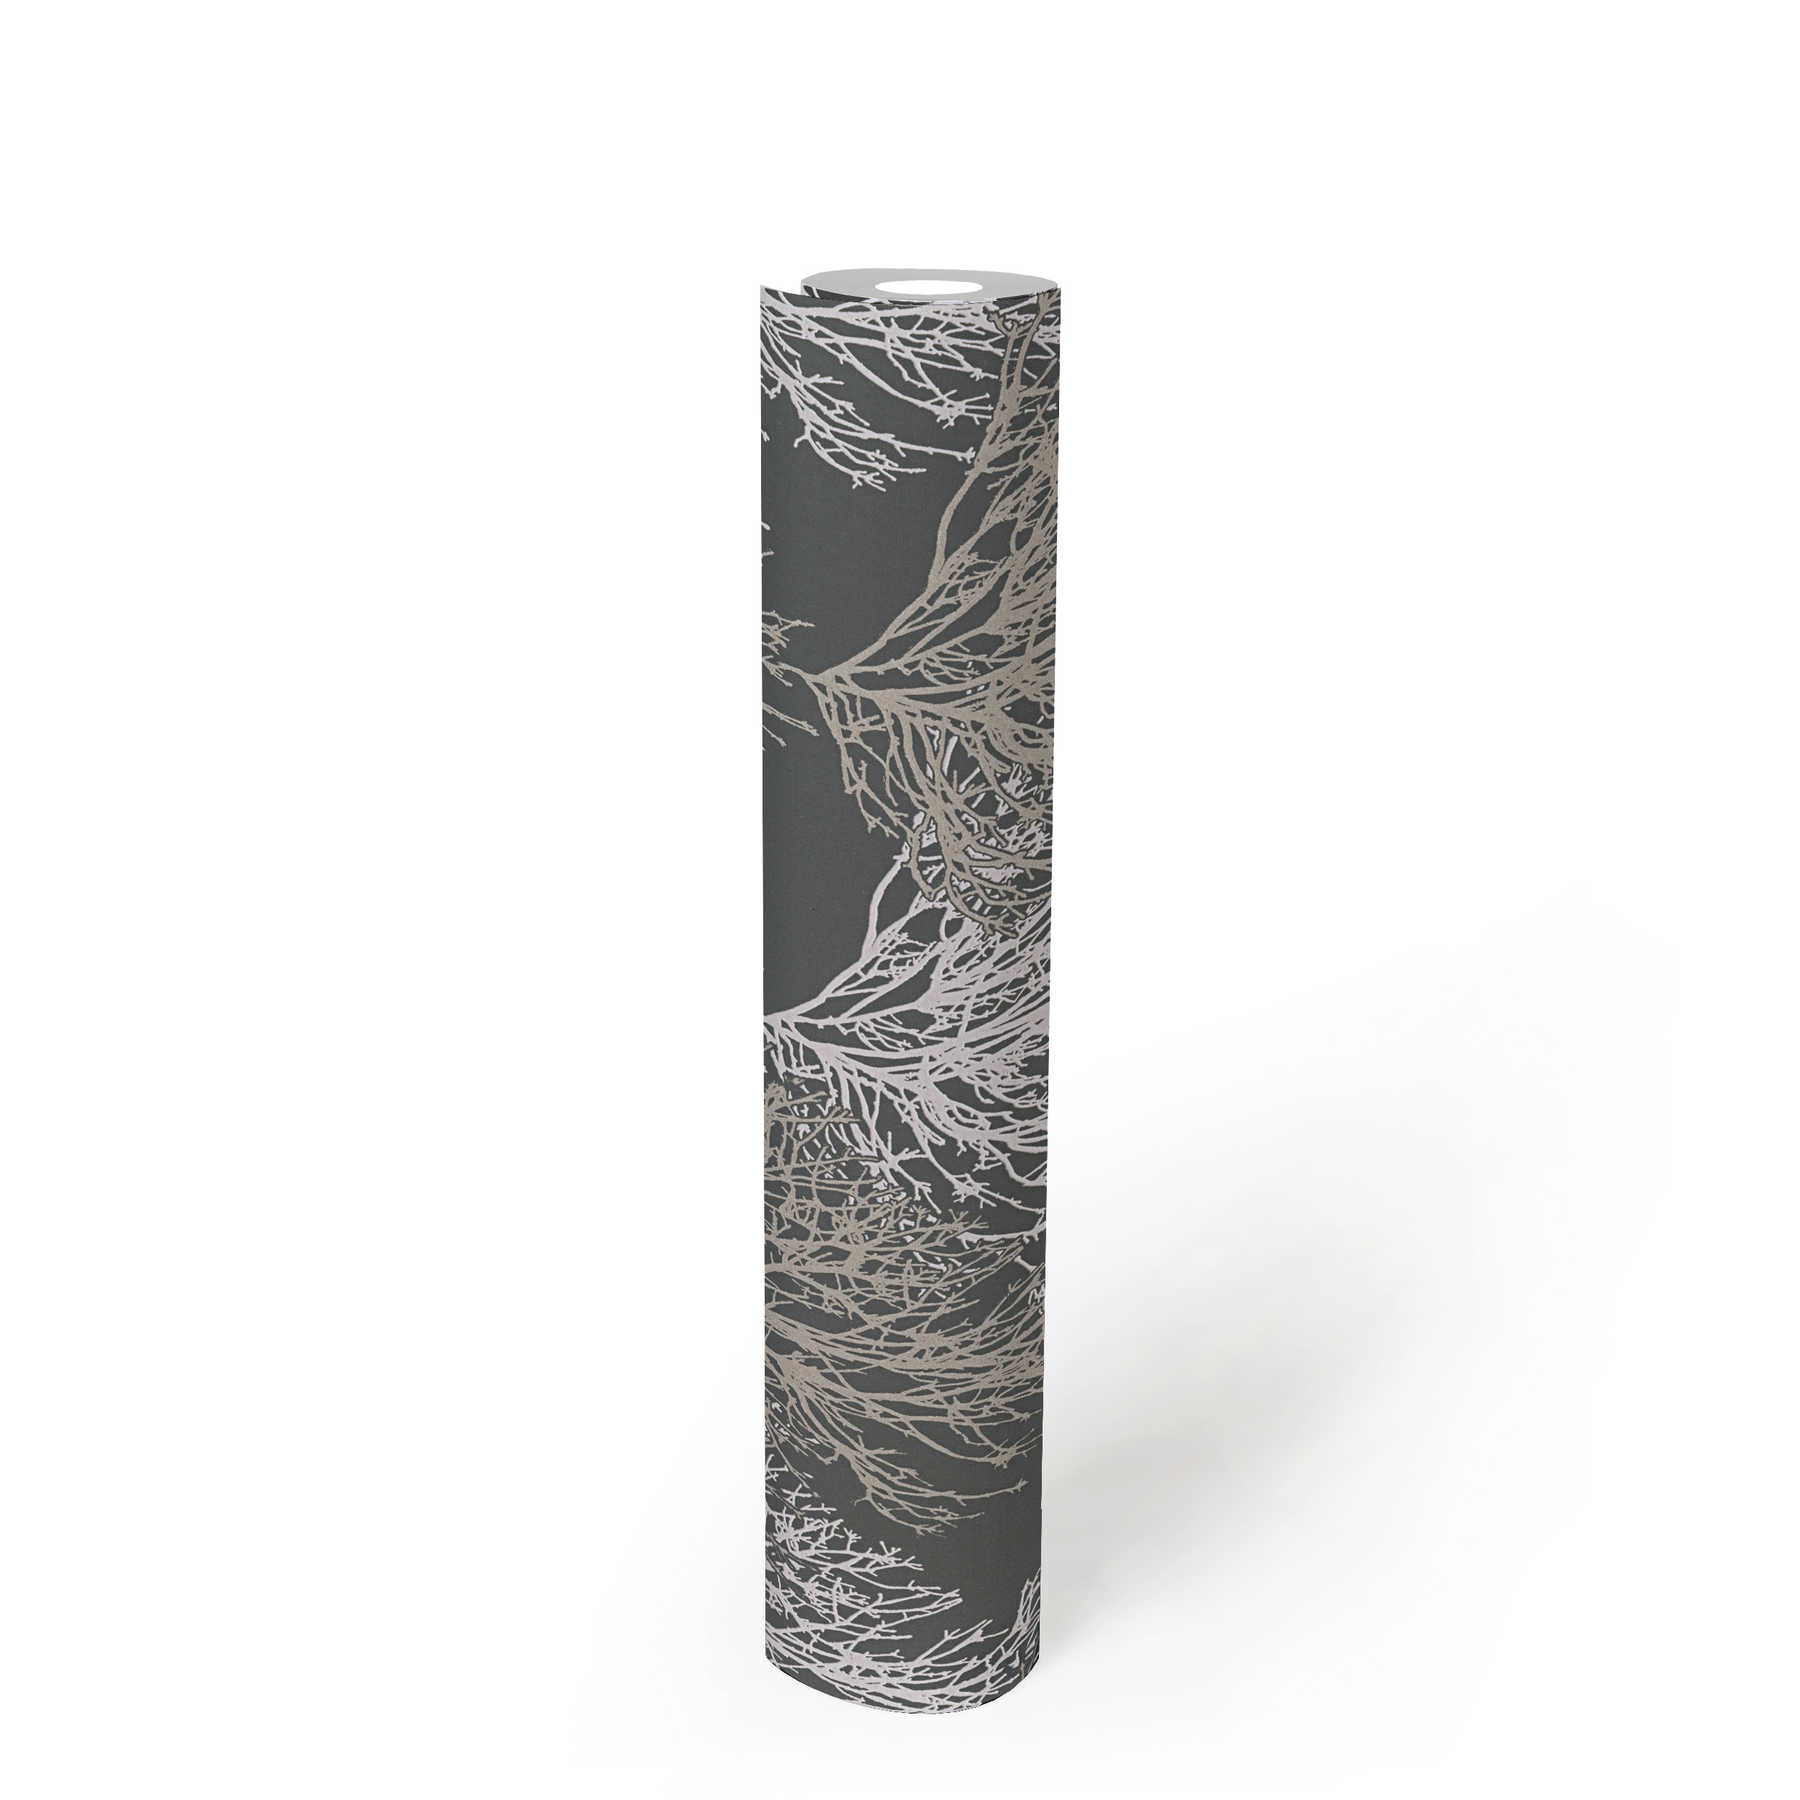             Boom design Papierbehang met metallic kleuren & structuur patroon - grijs
        